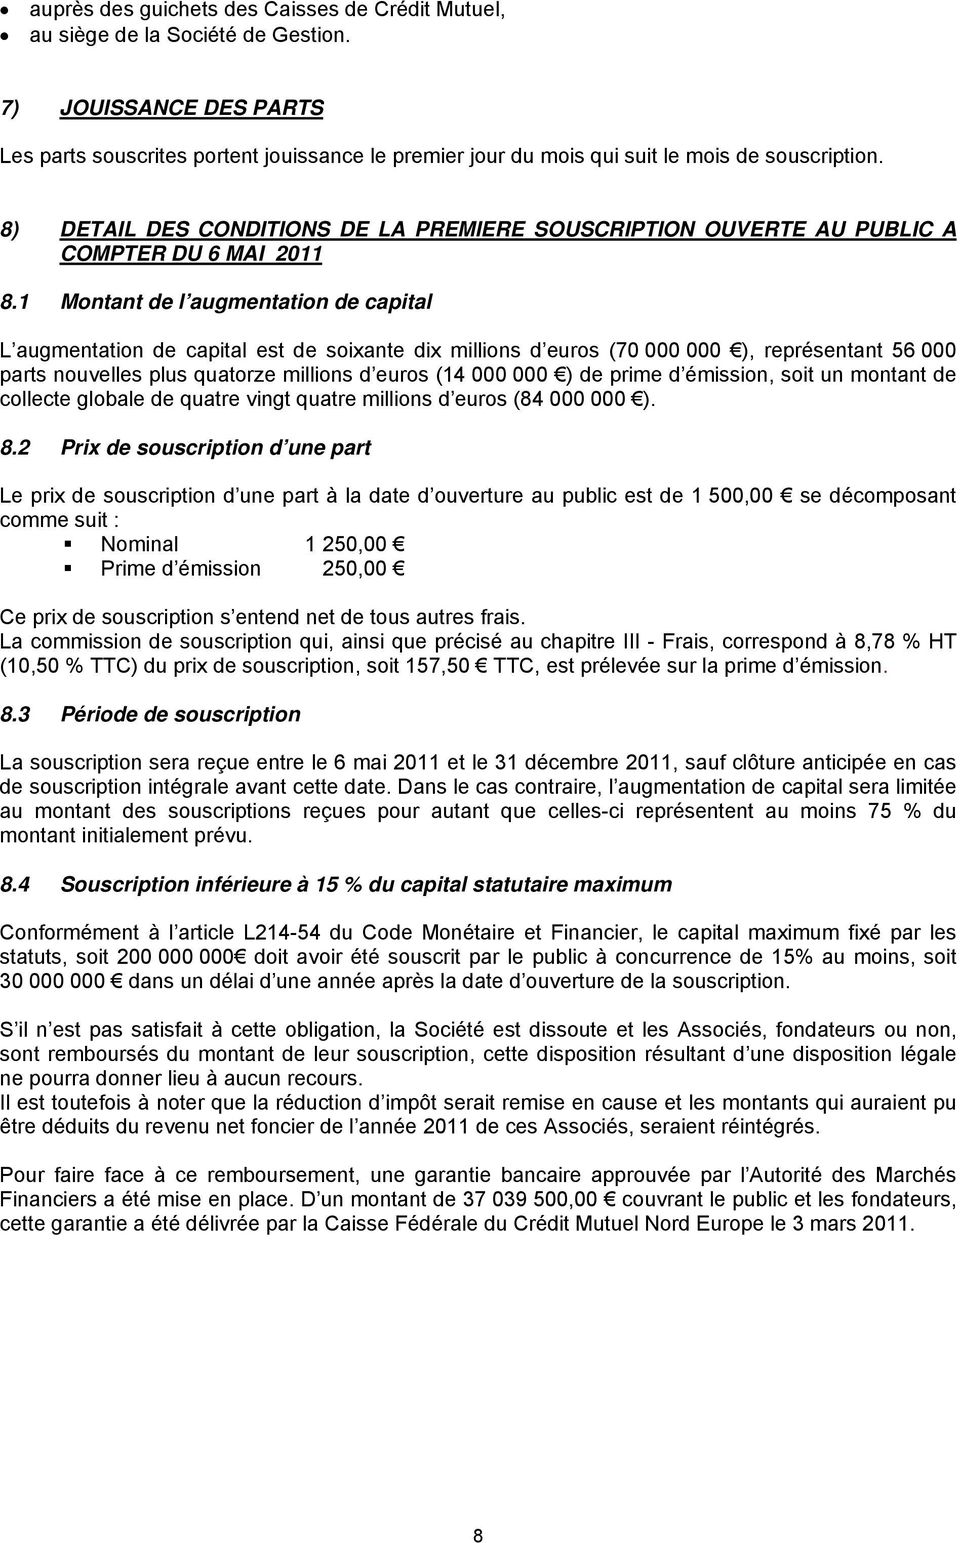 8) DETAIL DES CONDITIONS DE LA PREMIERE SOUSCRIPTION OUVERTE AU PUBLIC A COMPTER DU 6 MAI 2011 8.